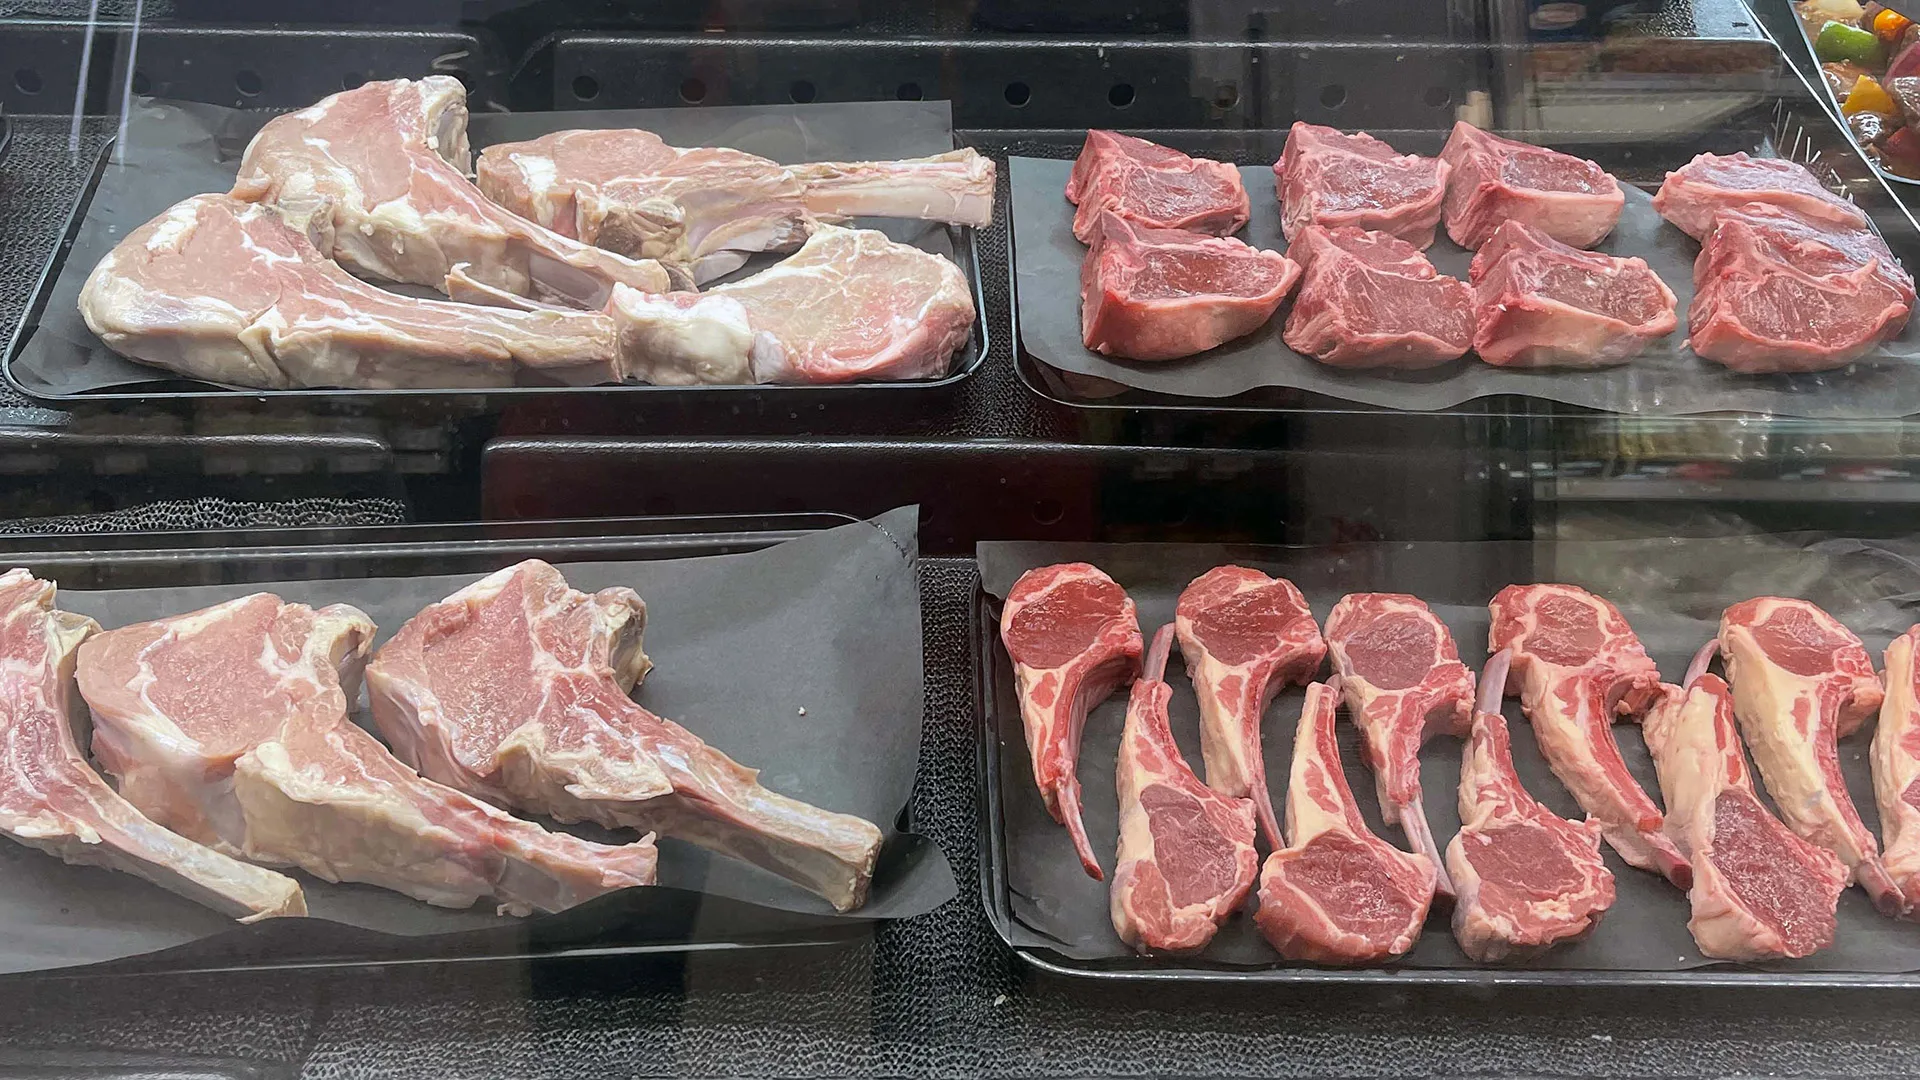 lamb chops, lamb loins, and lamb products on display